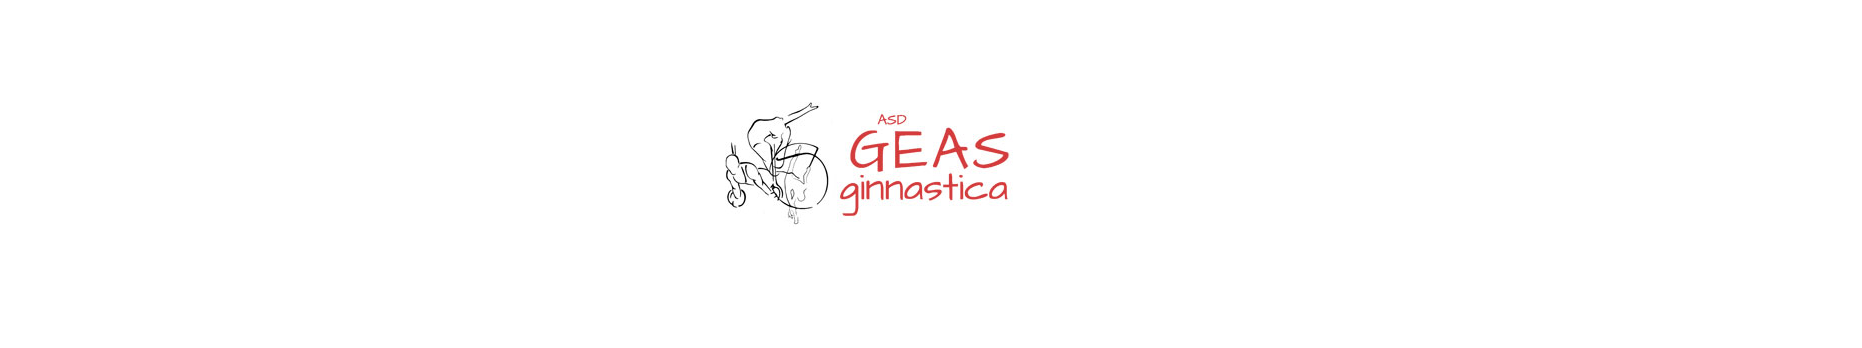 Associazione G.E.A.S. - Ginnastica artistica e ritmica - logo